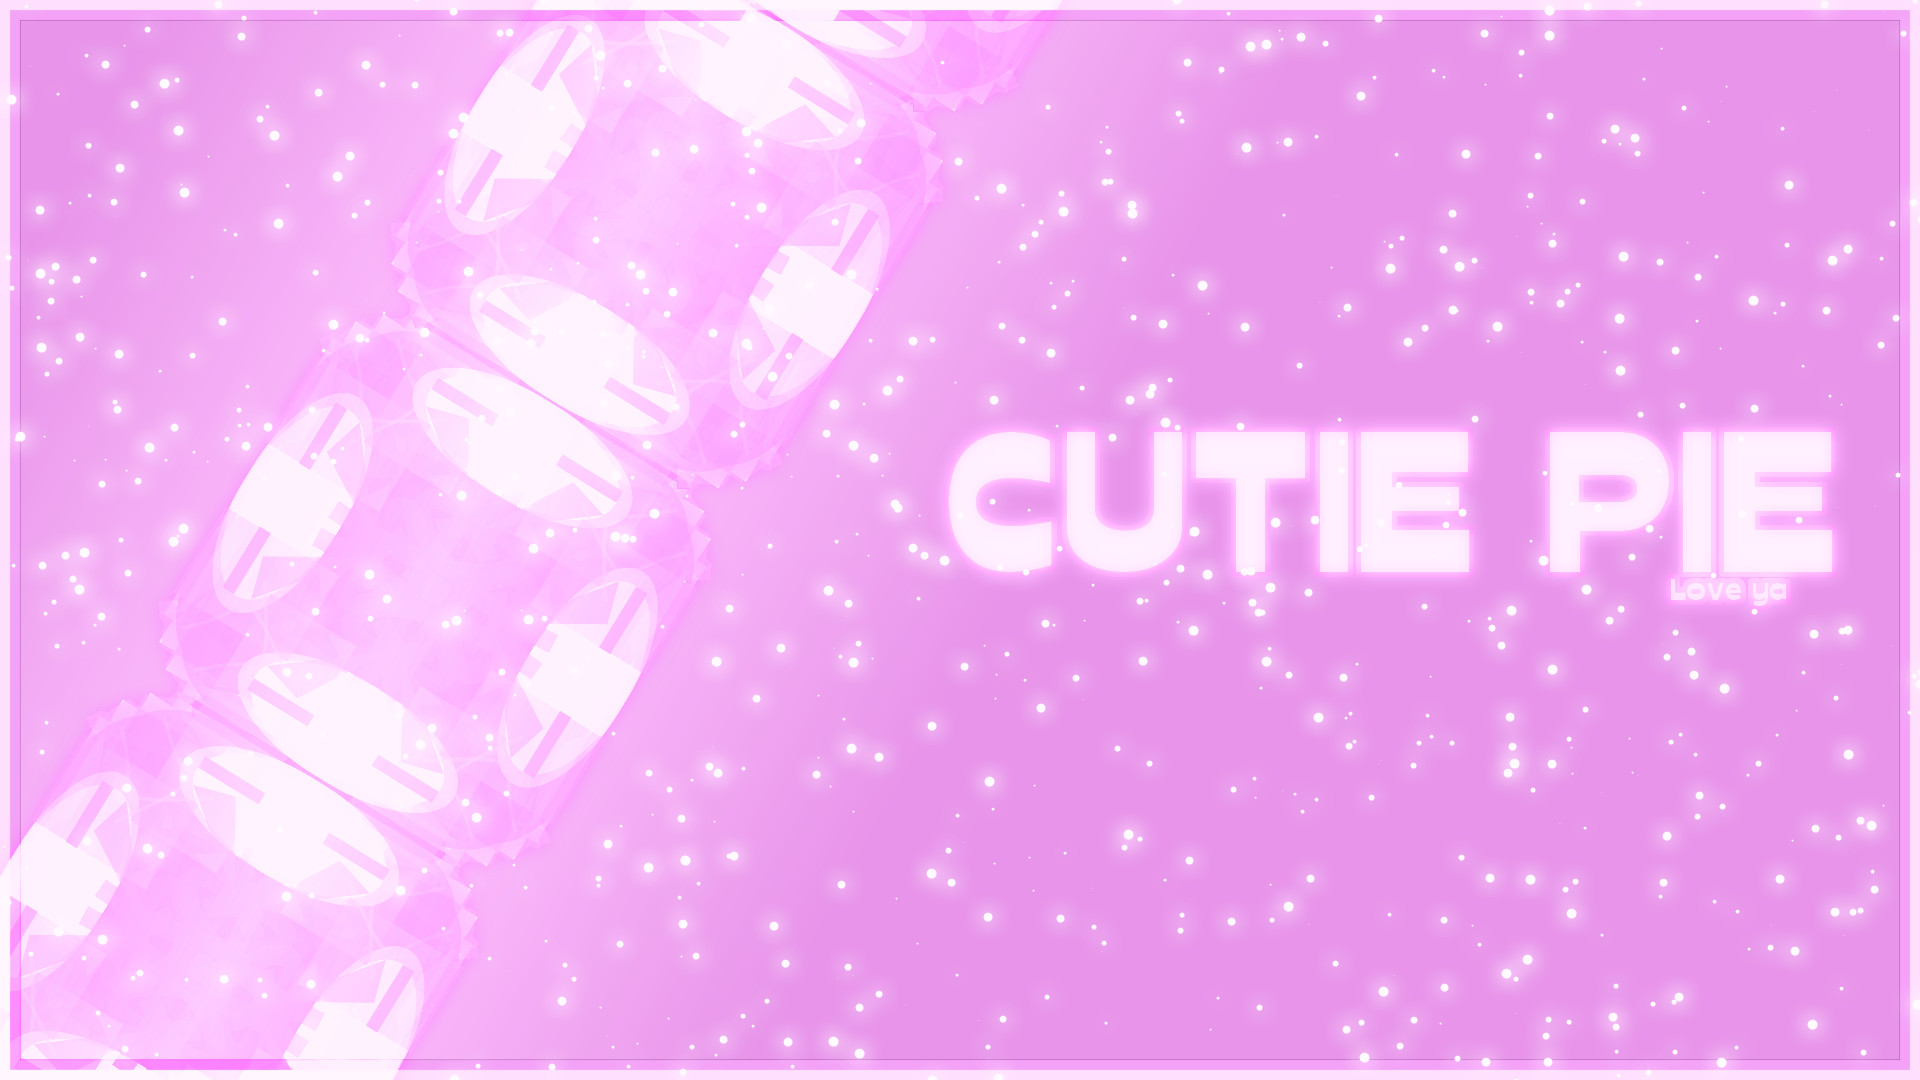 Cutie Pie Pink Wallpaper By Emosoftwere